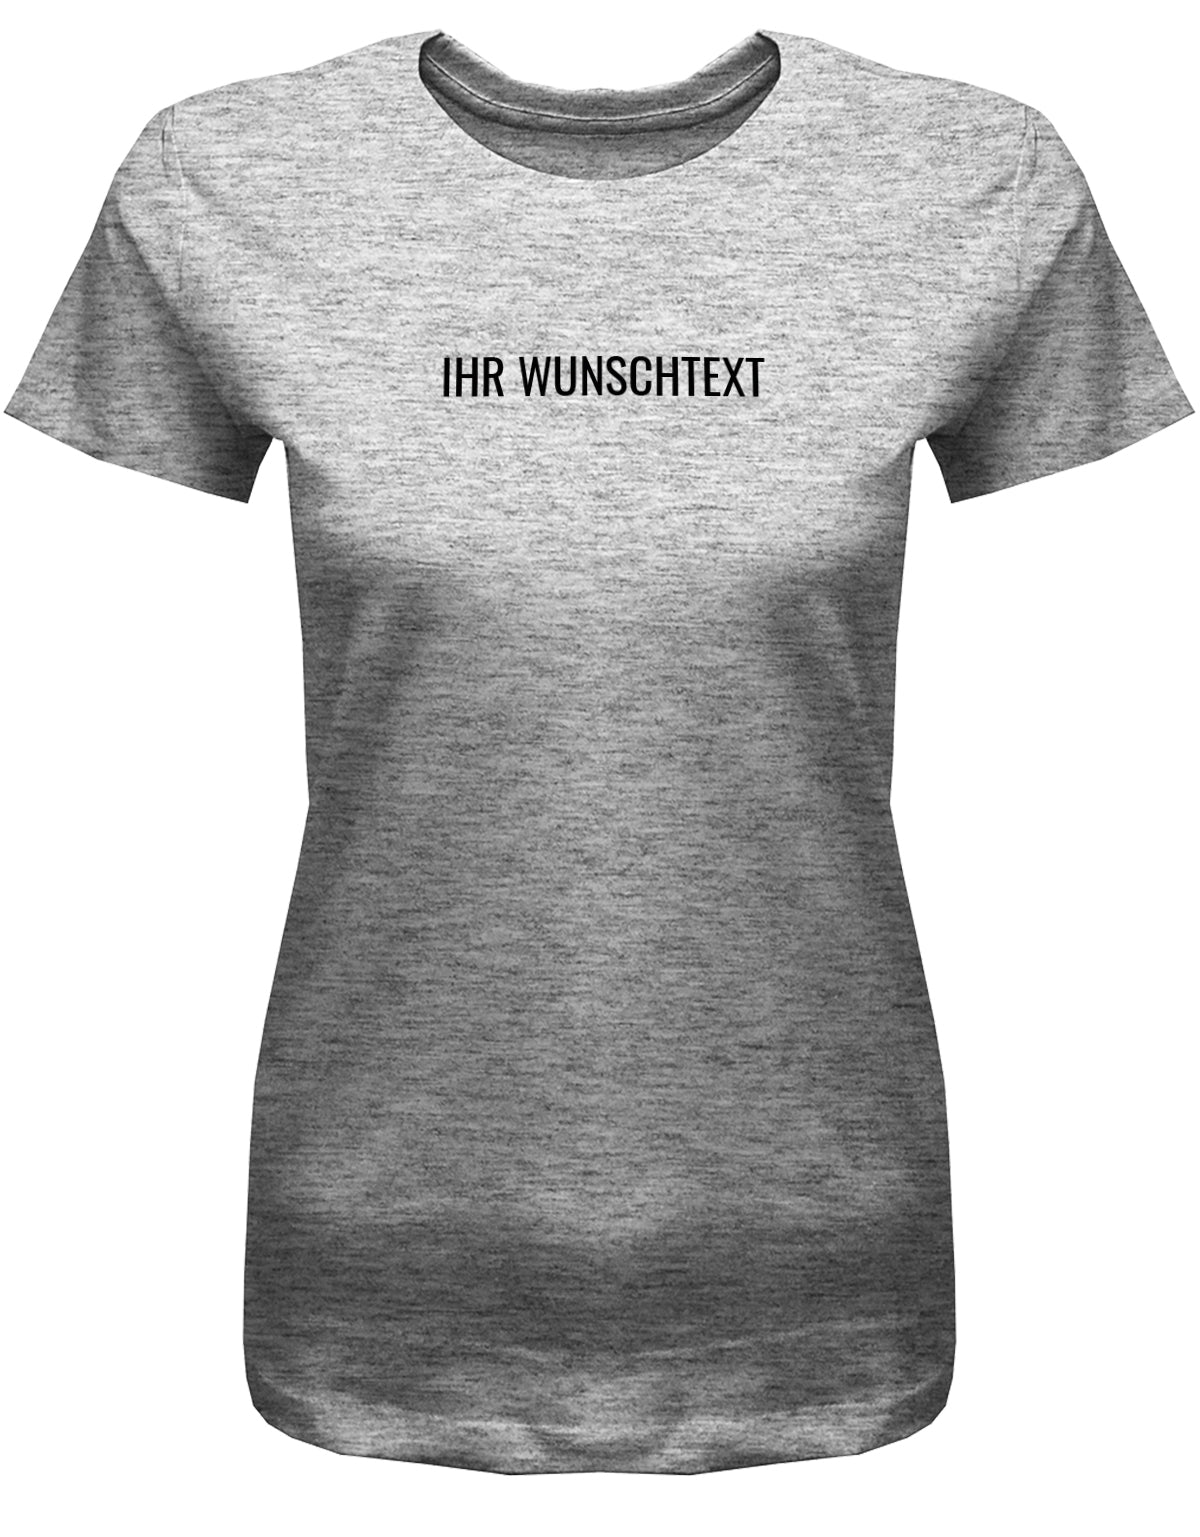 Frauen Tshirt mit Wunschtext. Minimalistisches Design. Grau